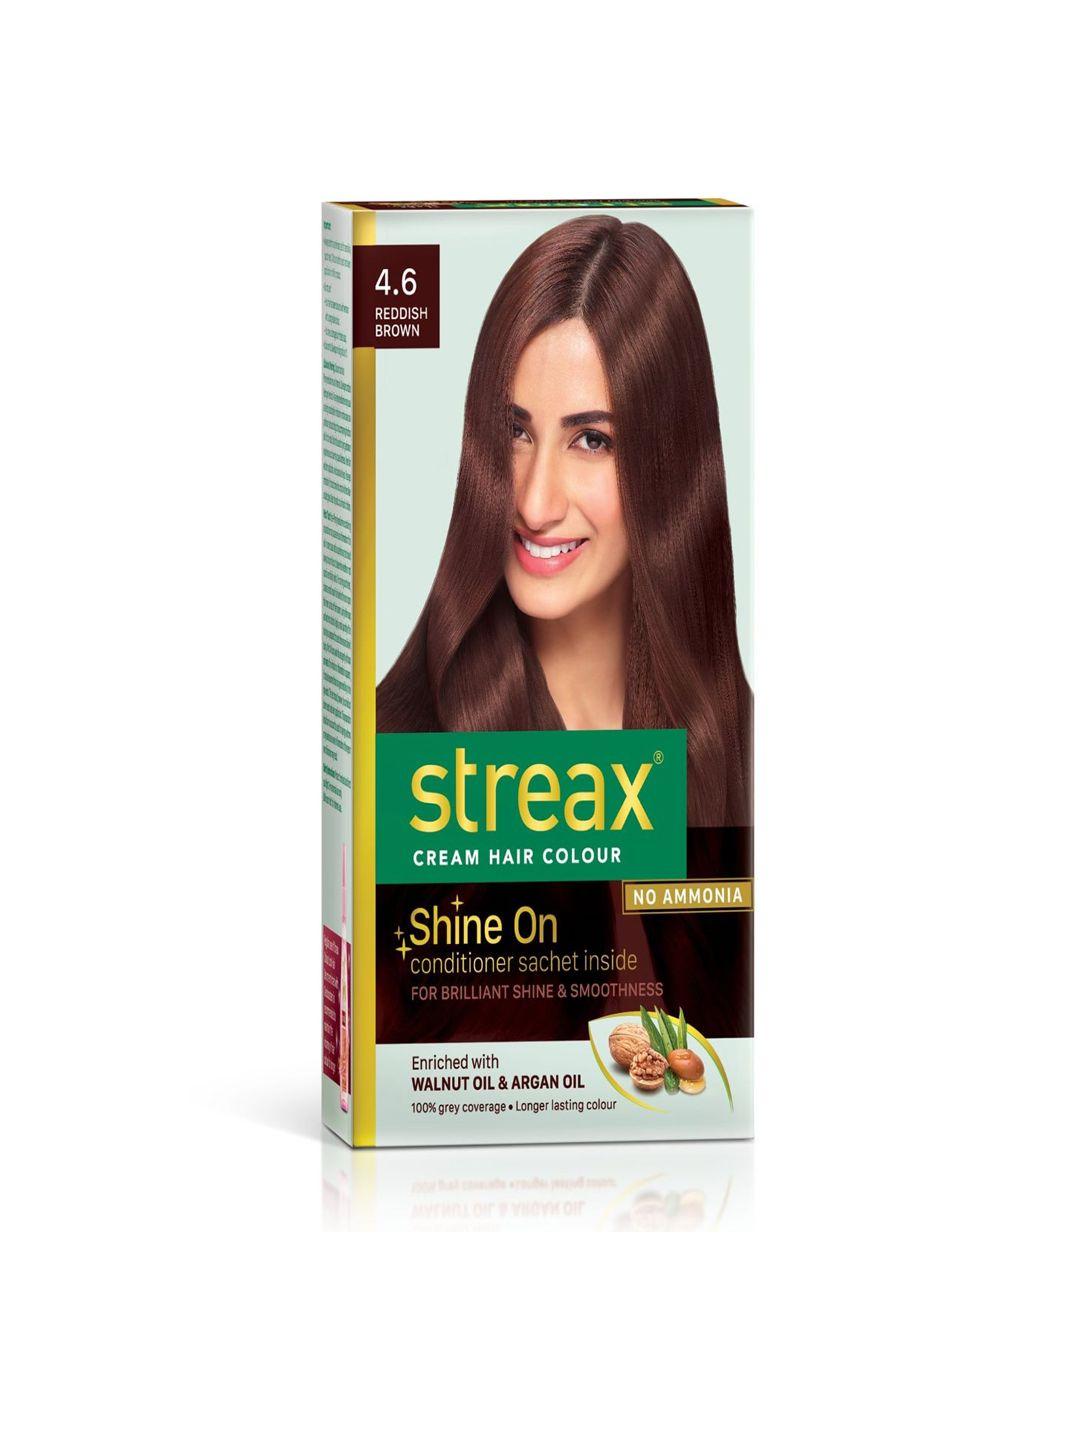 streax cream hair colour - 4.6 reddish brown 120ml